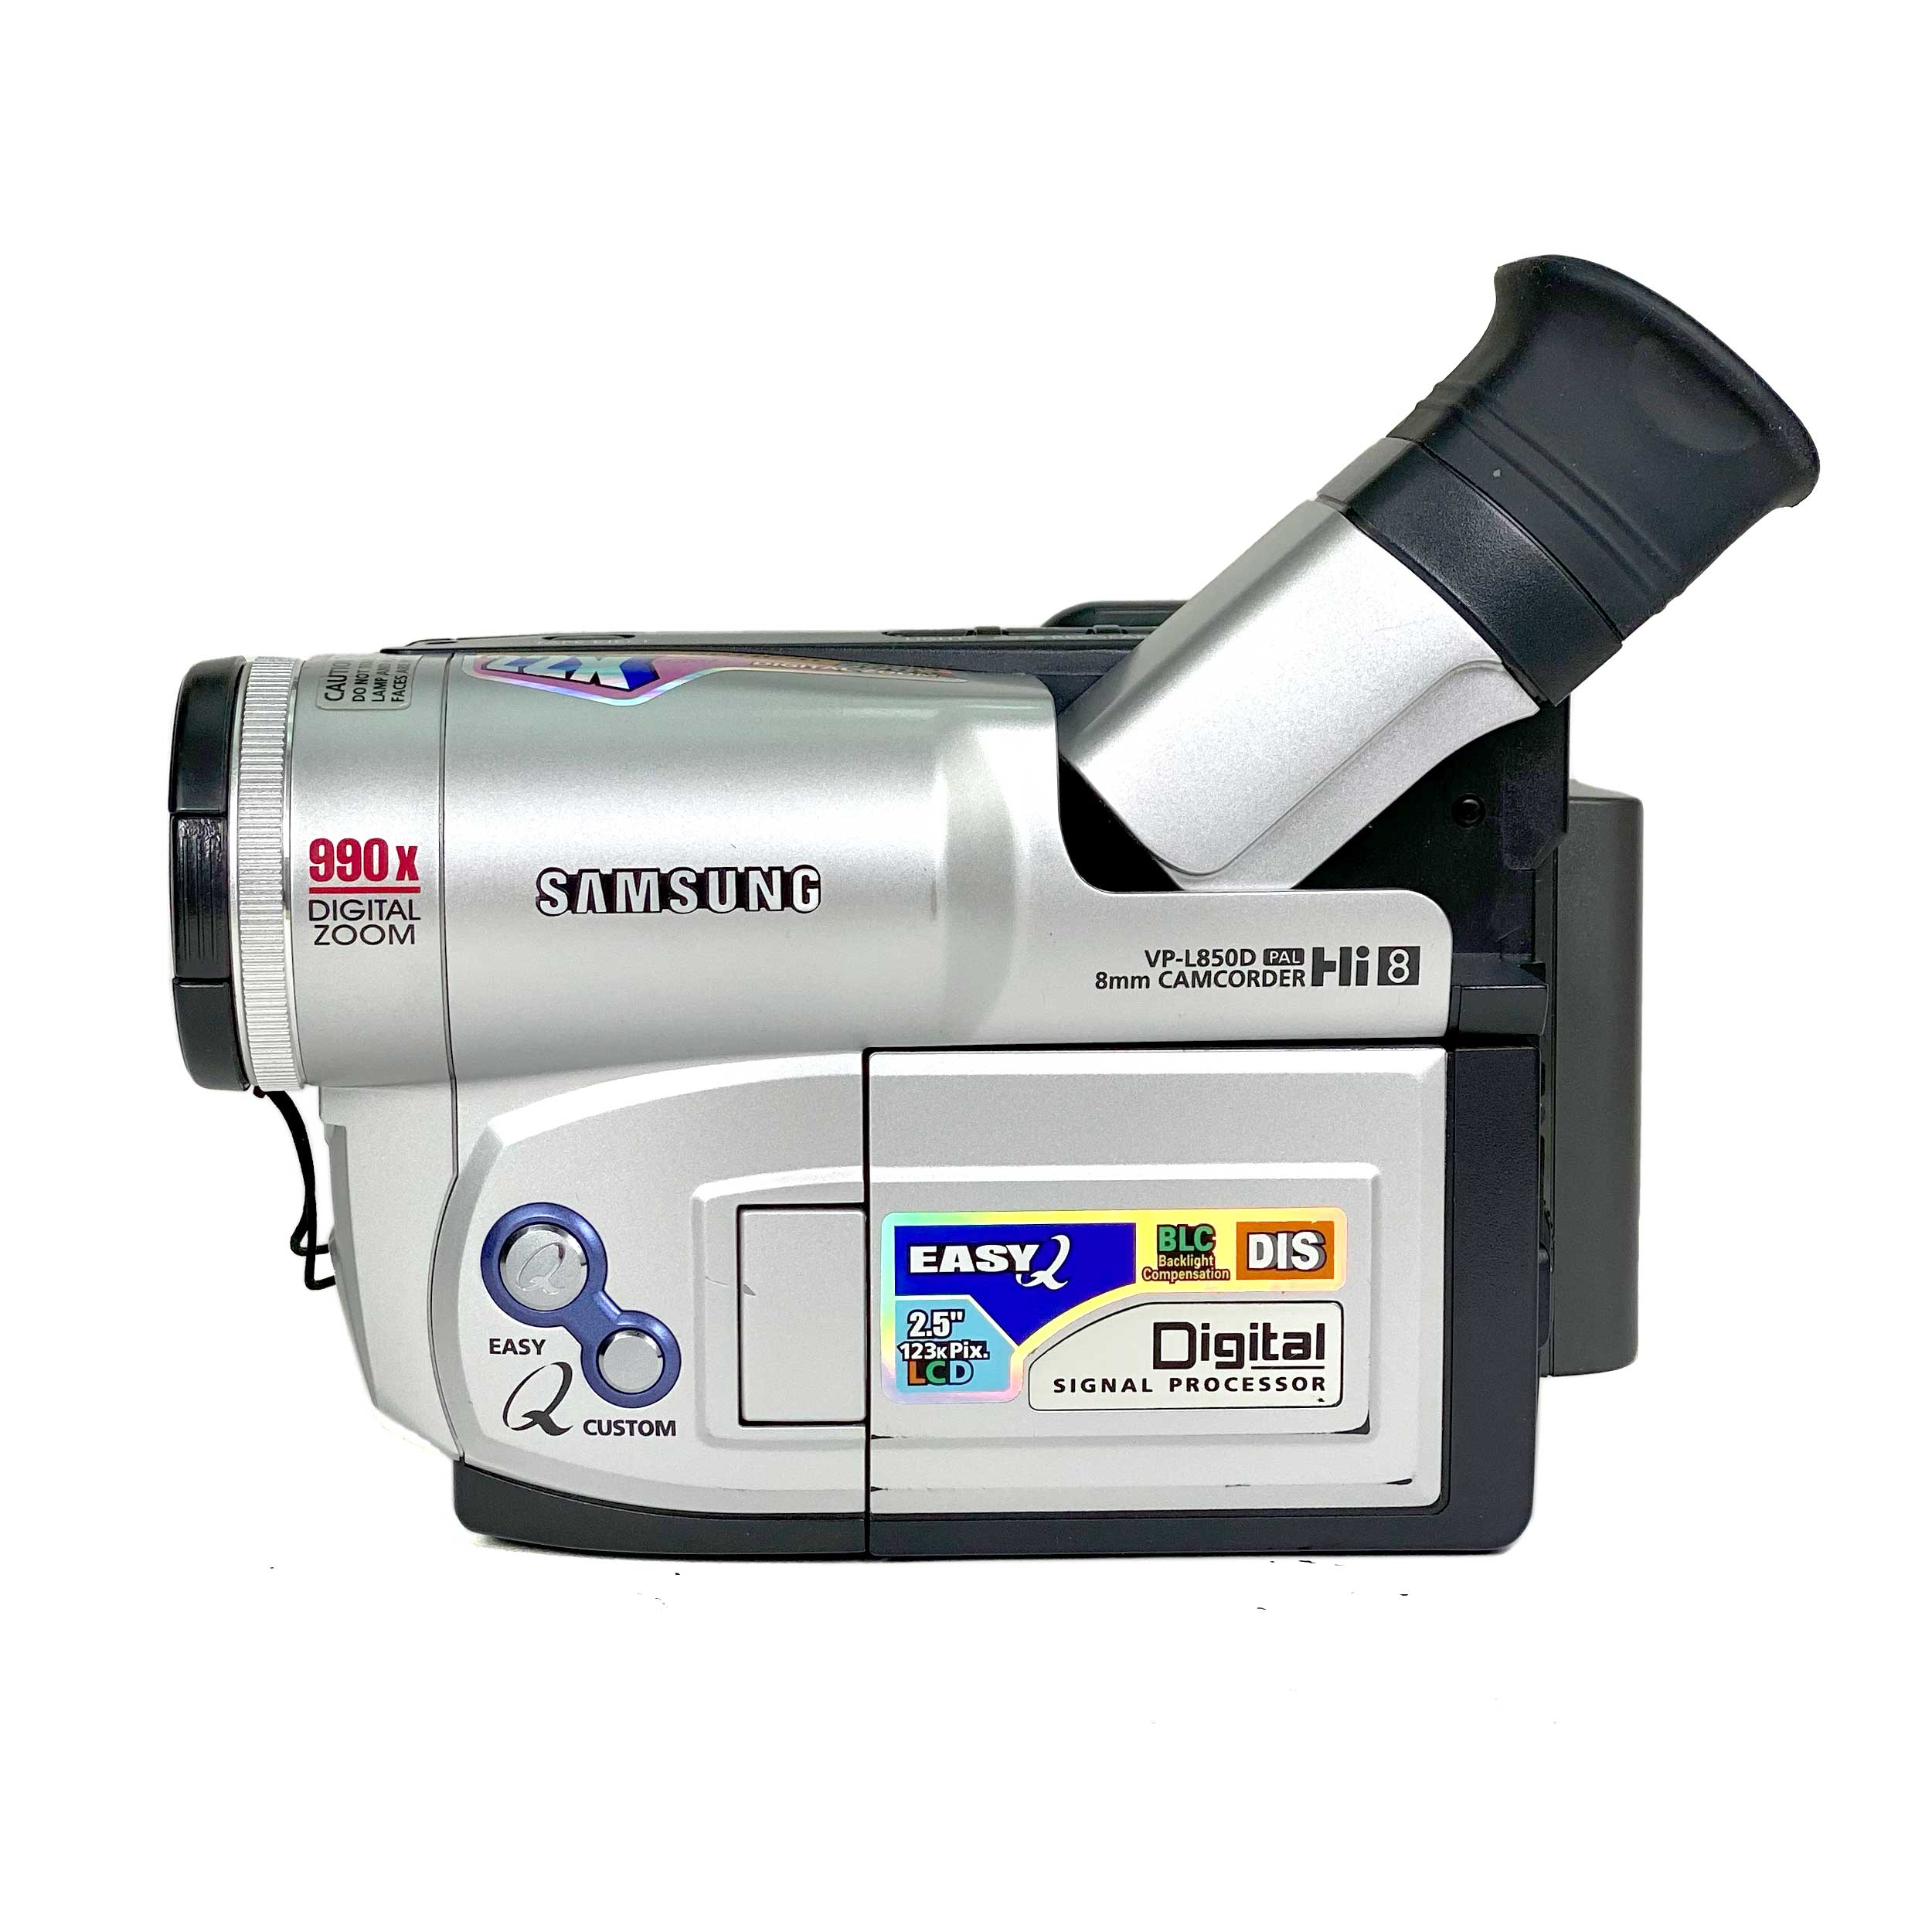 pendul kalv Saga Samsung VP-L850D PAL Hi 8 Video CamCorder – Retro Camera Shop